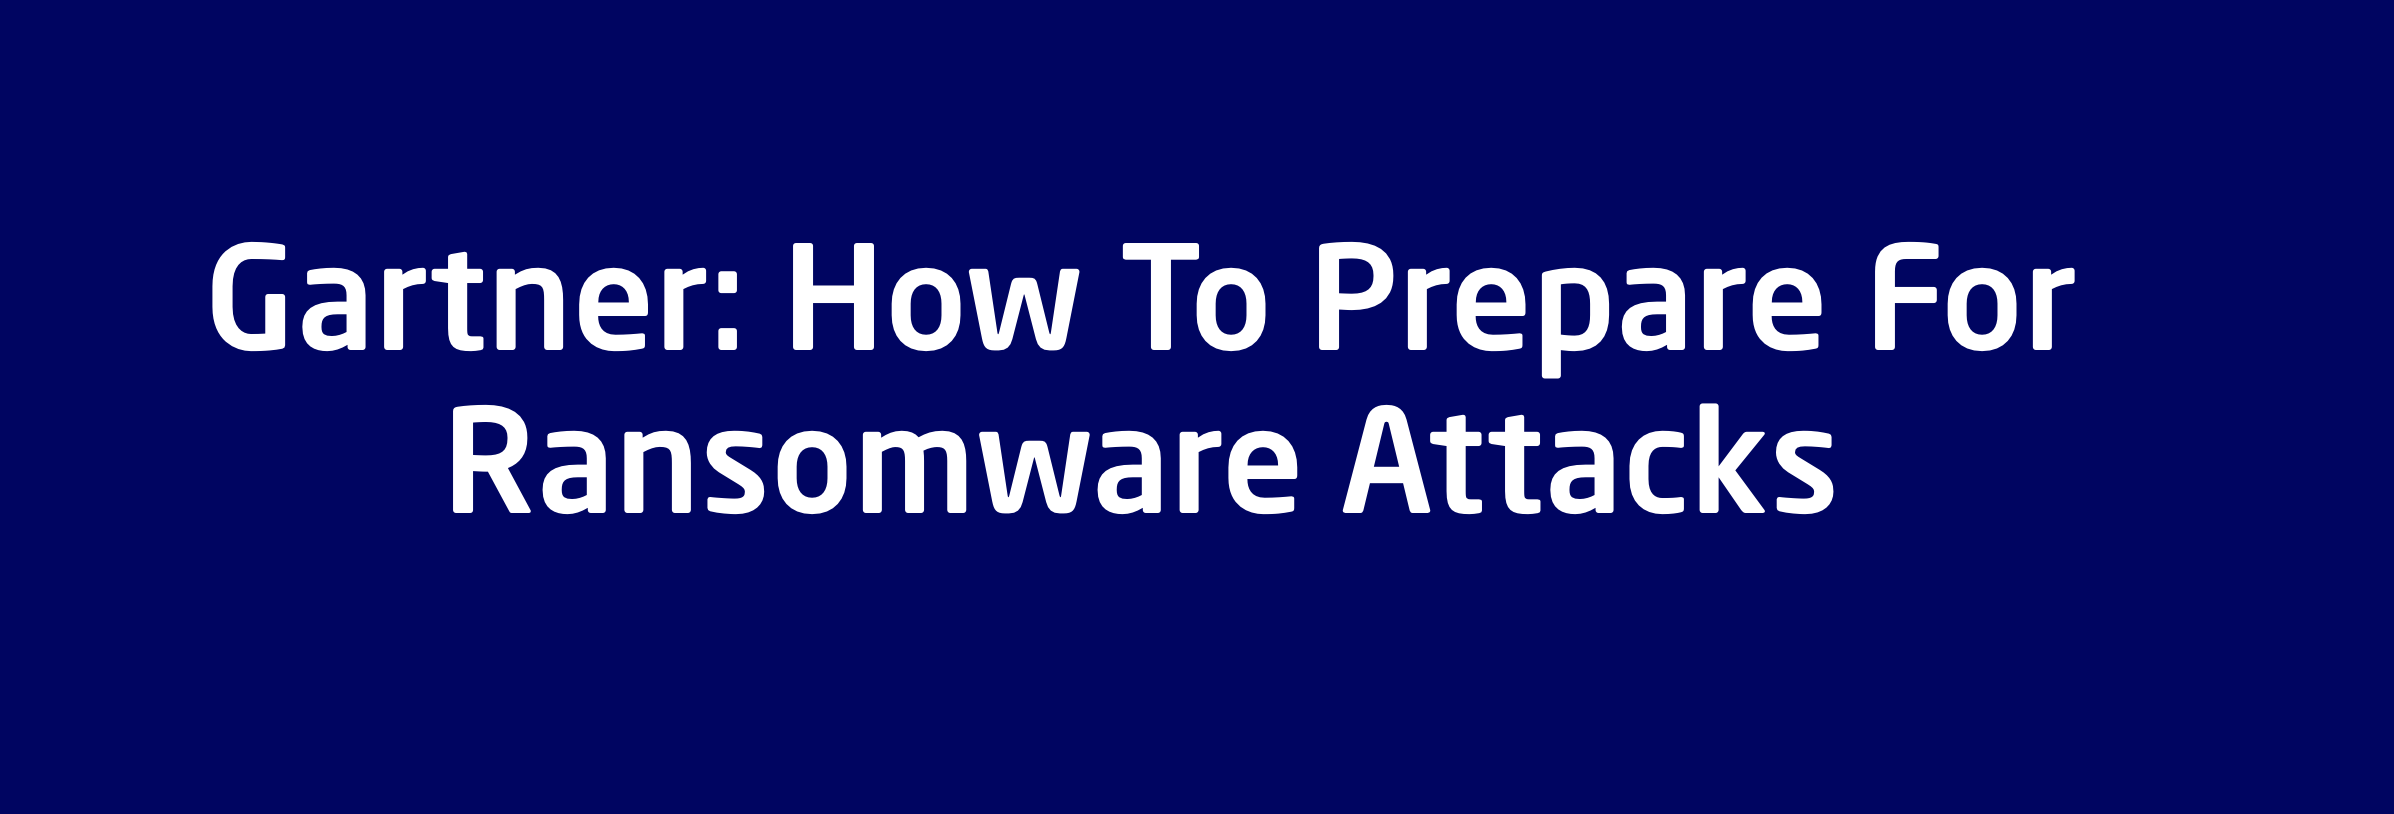 Gartner: How to Prepare for Ransomware Attacks